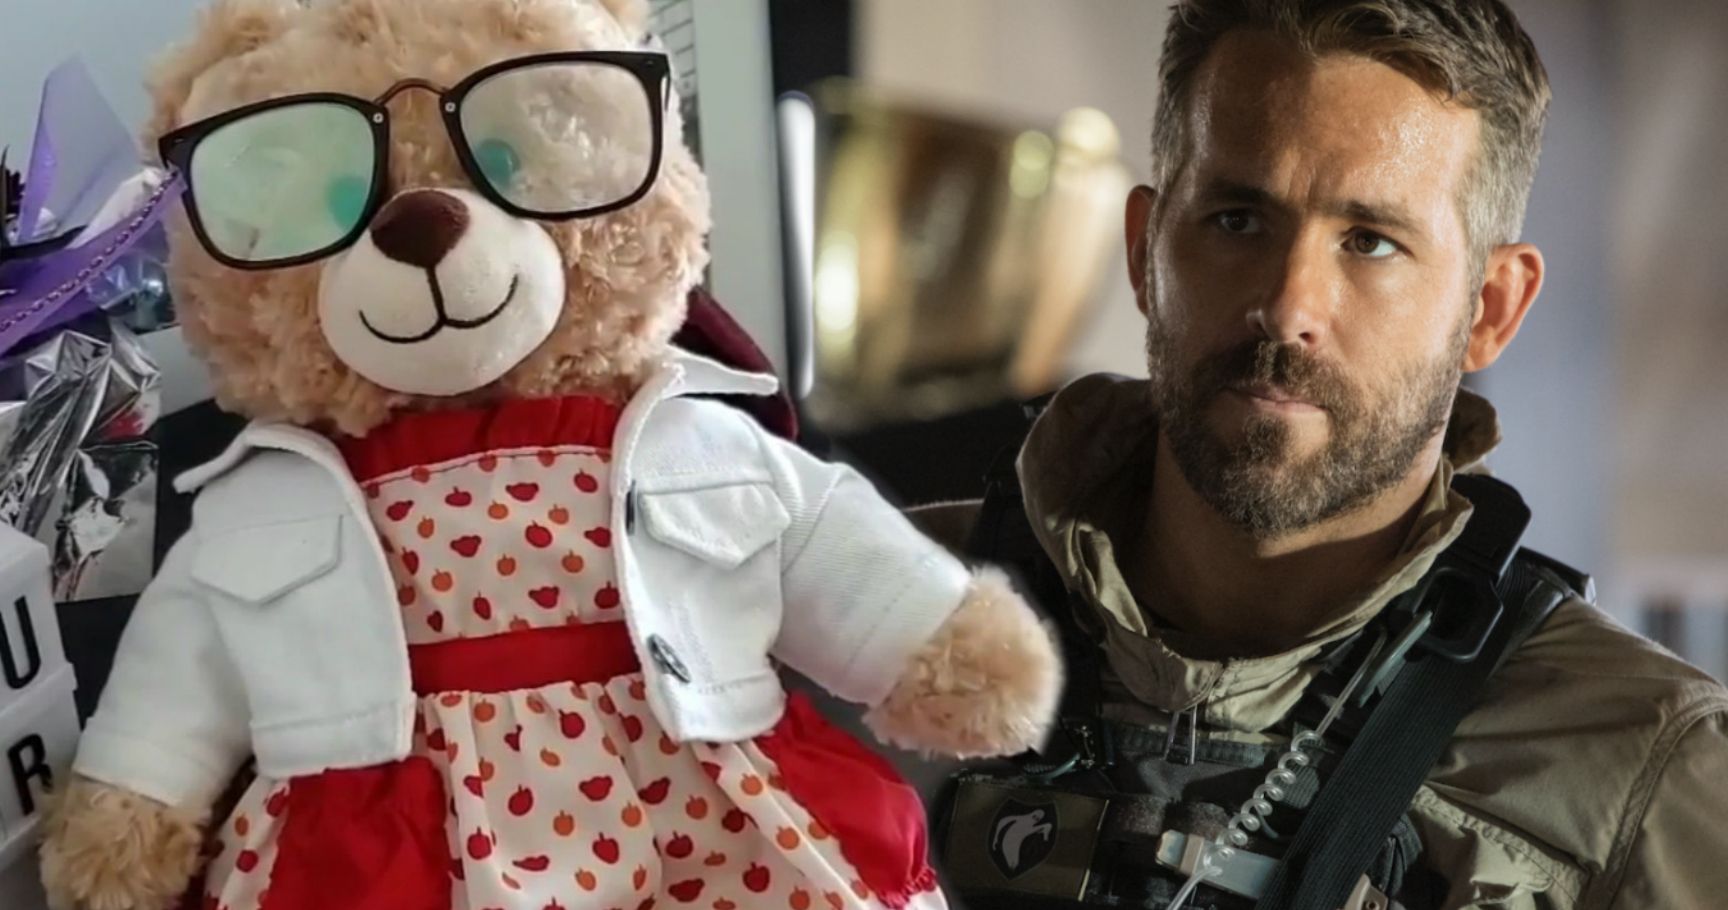 Ryan Reynolds Offers $5K Reward for Return of Stolen Stuffed Bear